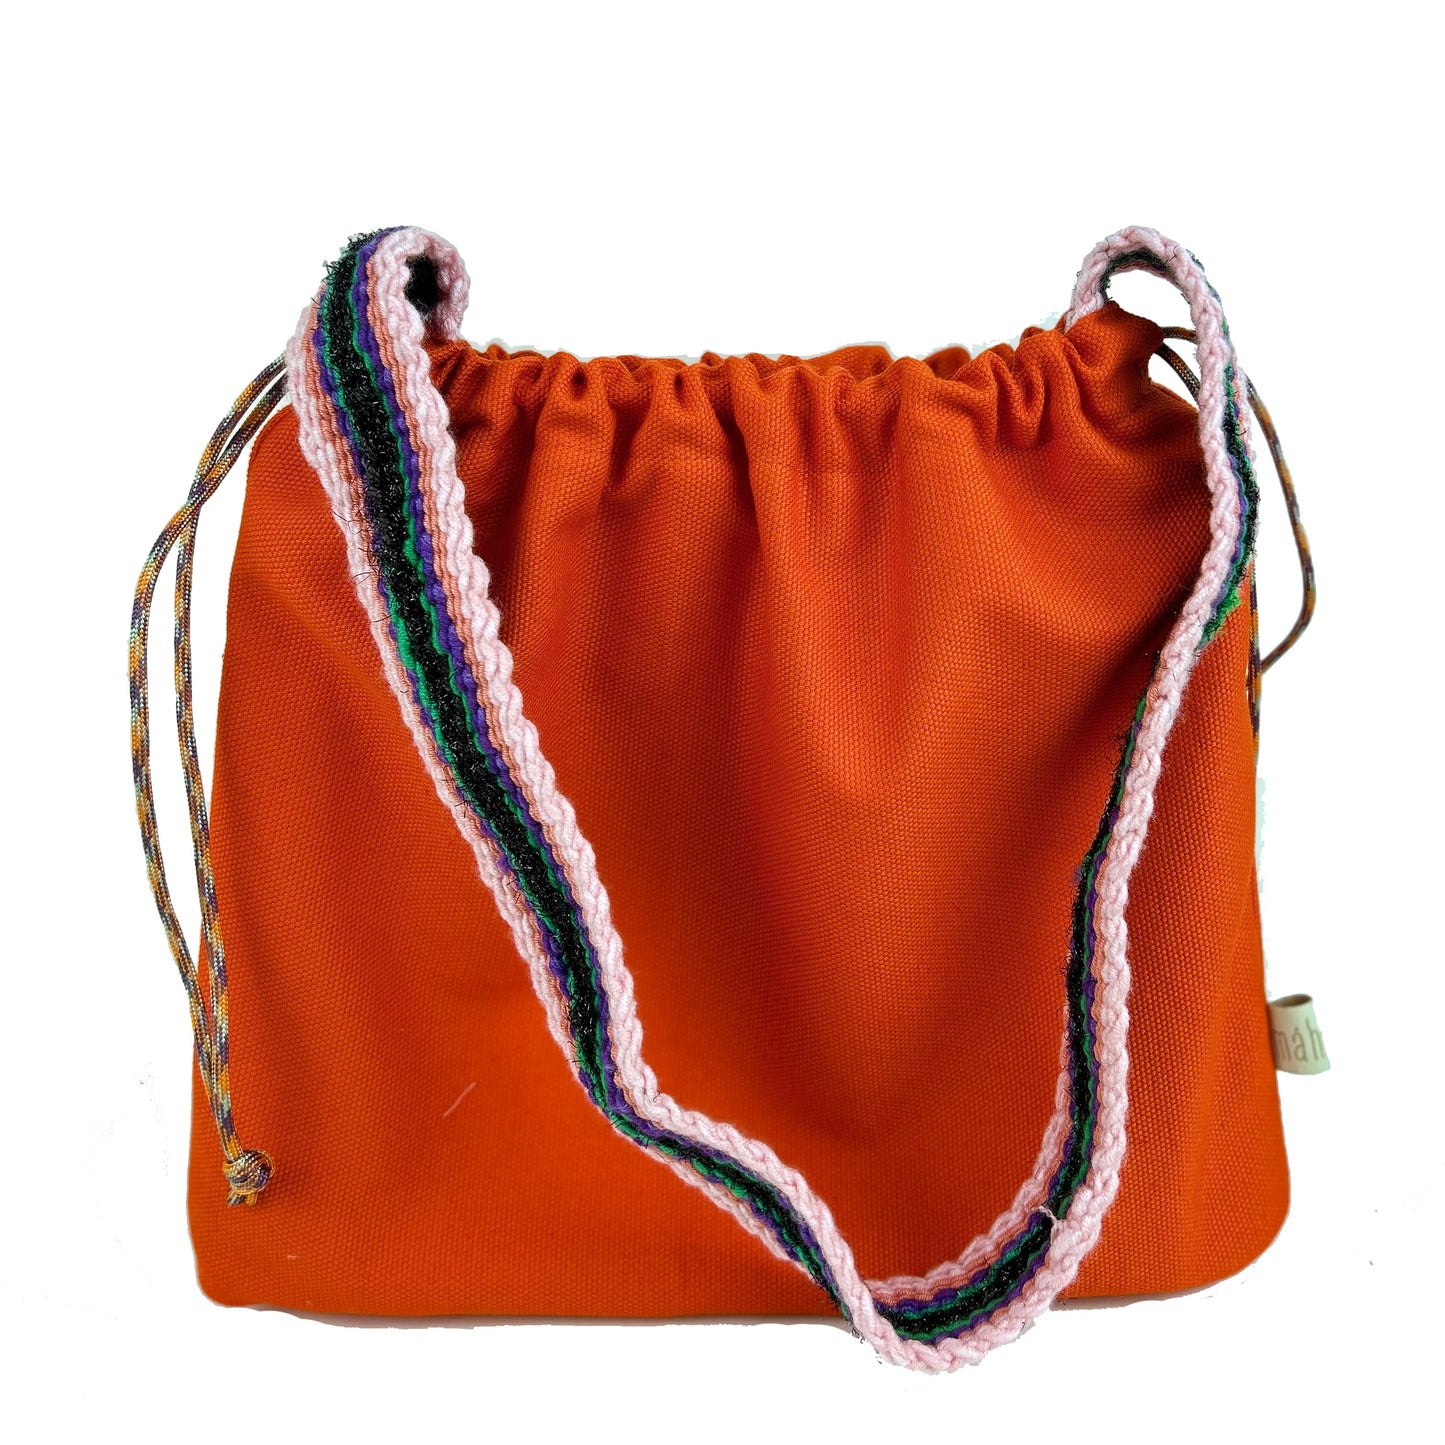 Reversible Kolan Handbag - Bright Orange